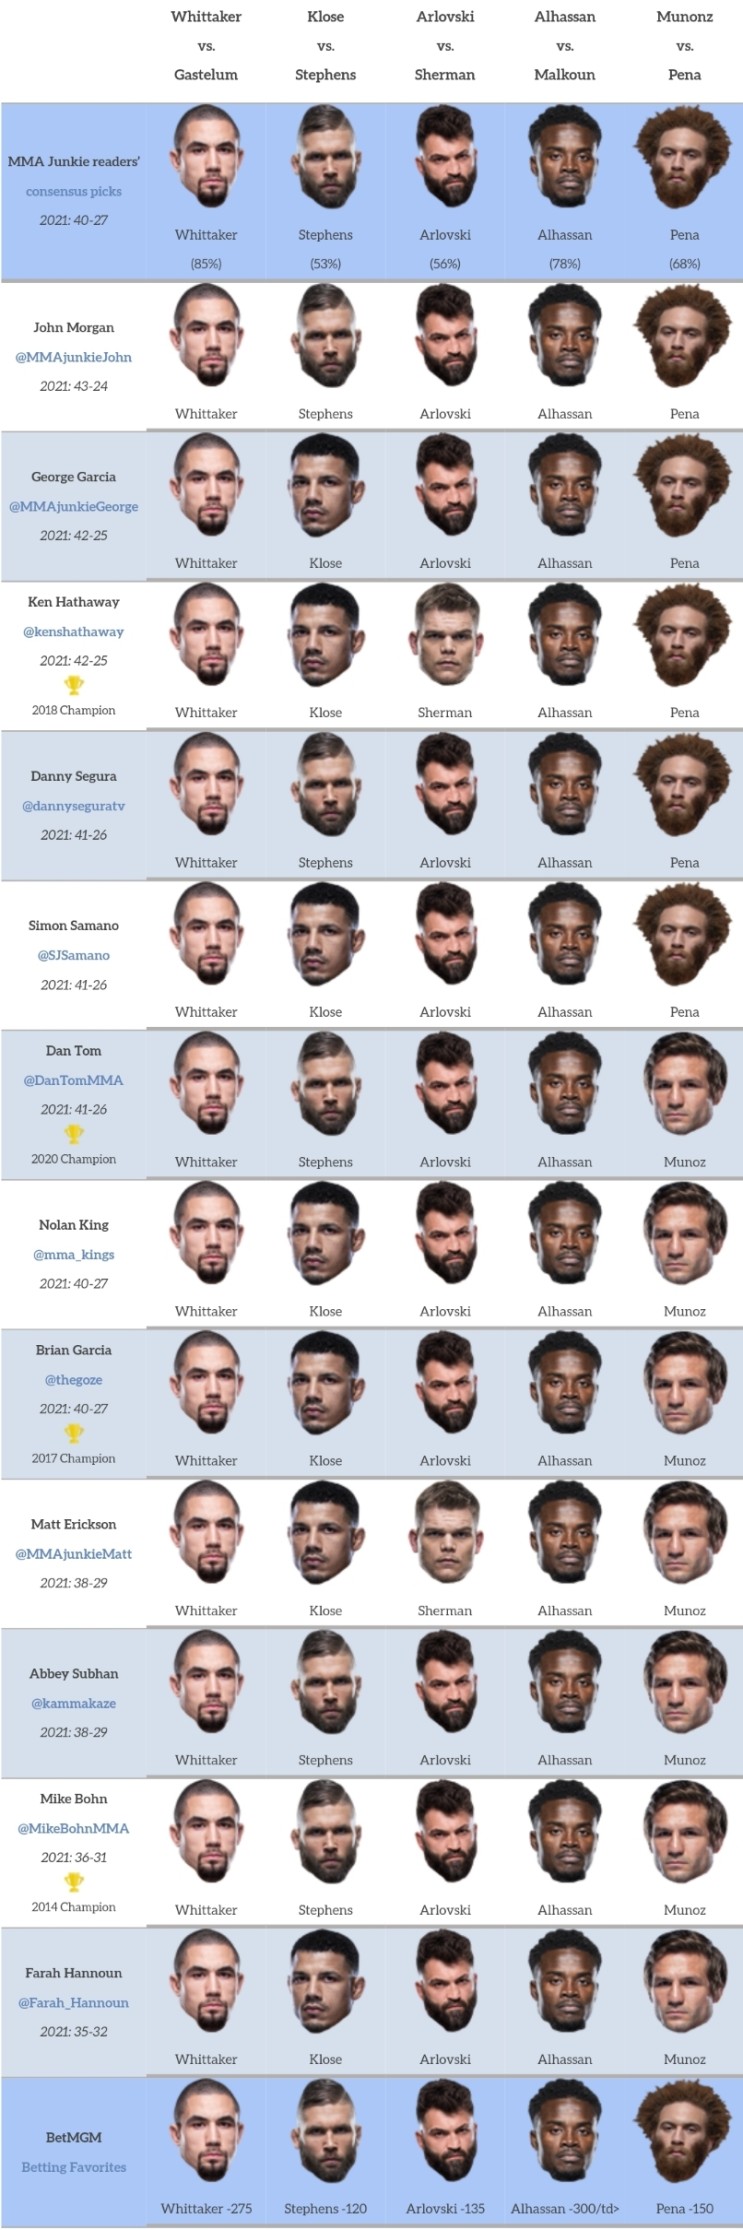 UFC 베가스 24: 휘태커 vs 가스텔럼 프리뷰(미디어 예상 및 배당률)